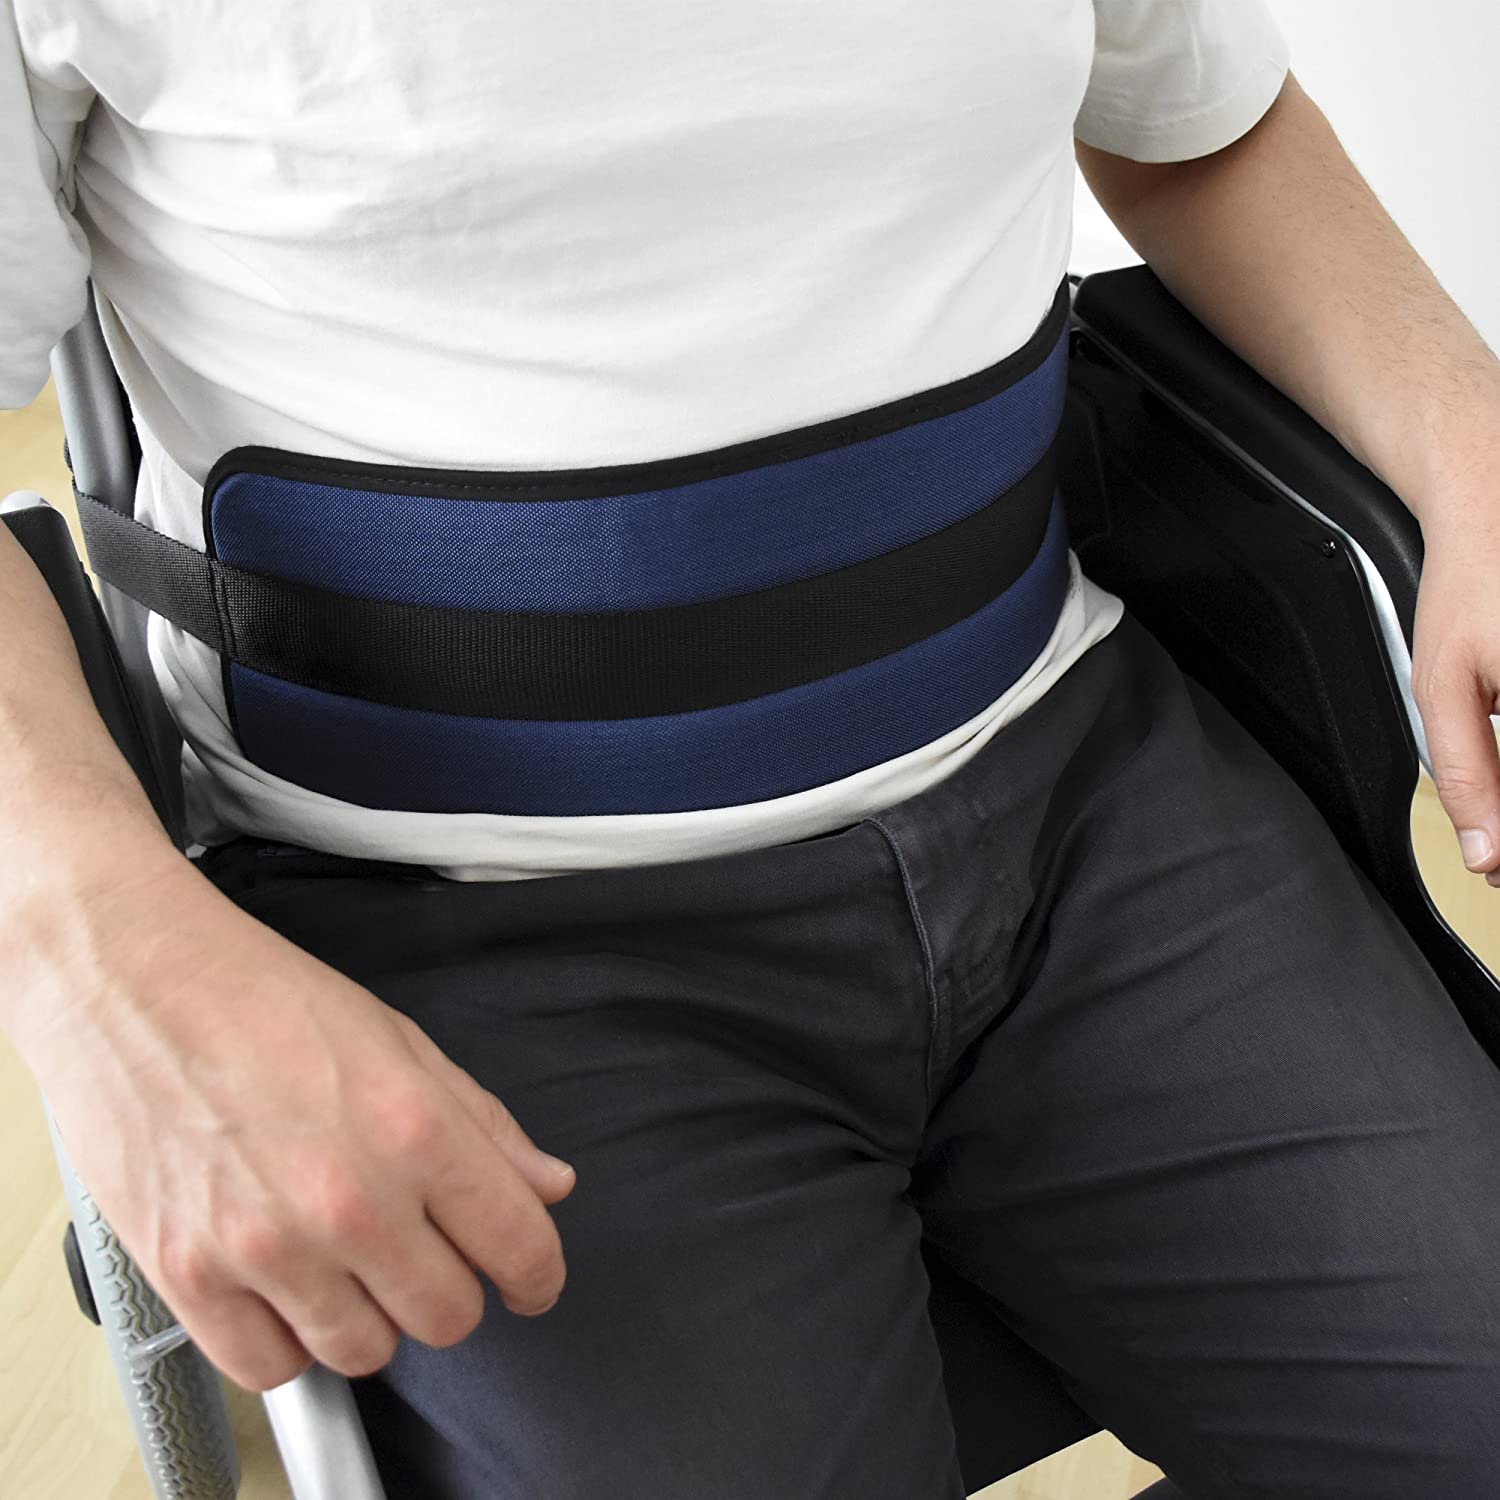  ORTONES | Cinturón de sujeción abdominal para silla de ruedas Talla Unica. 